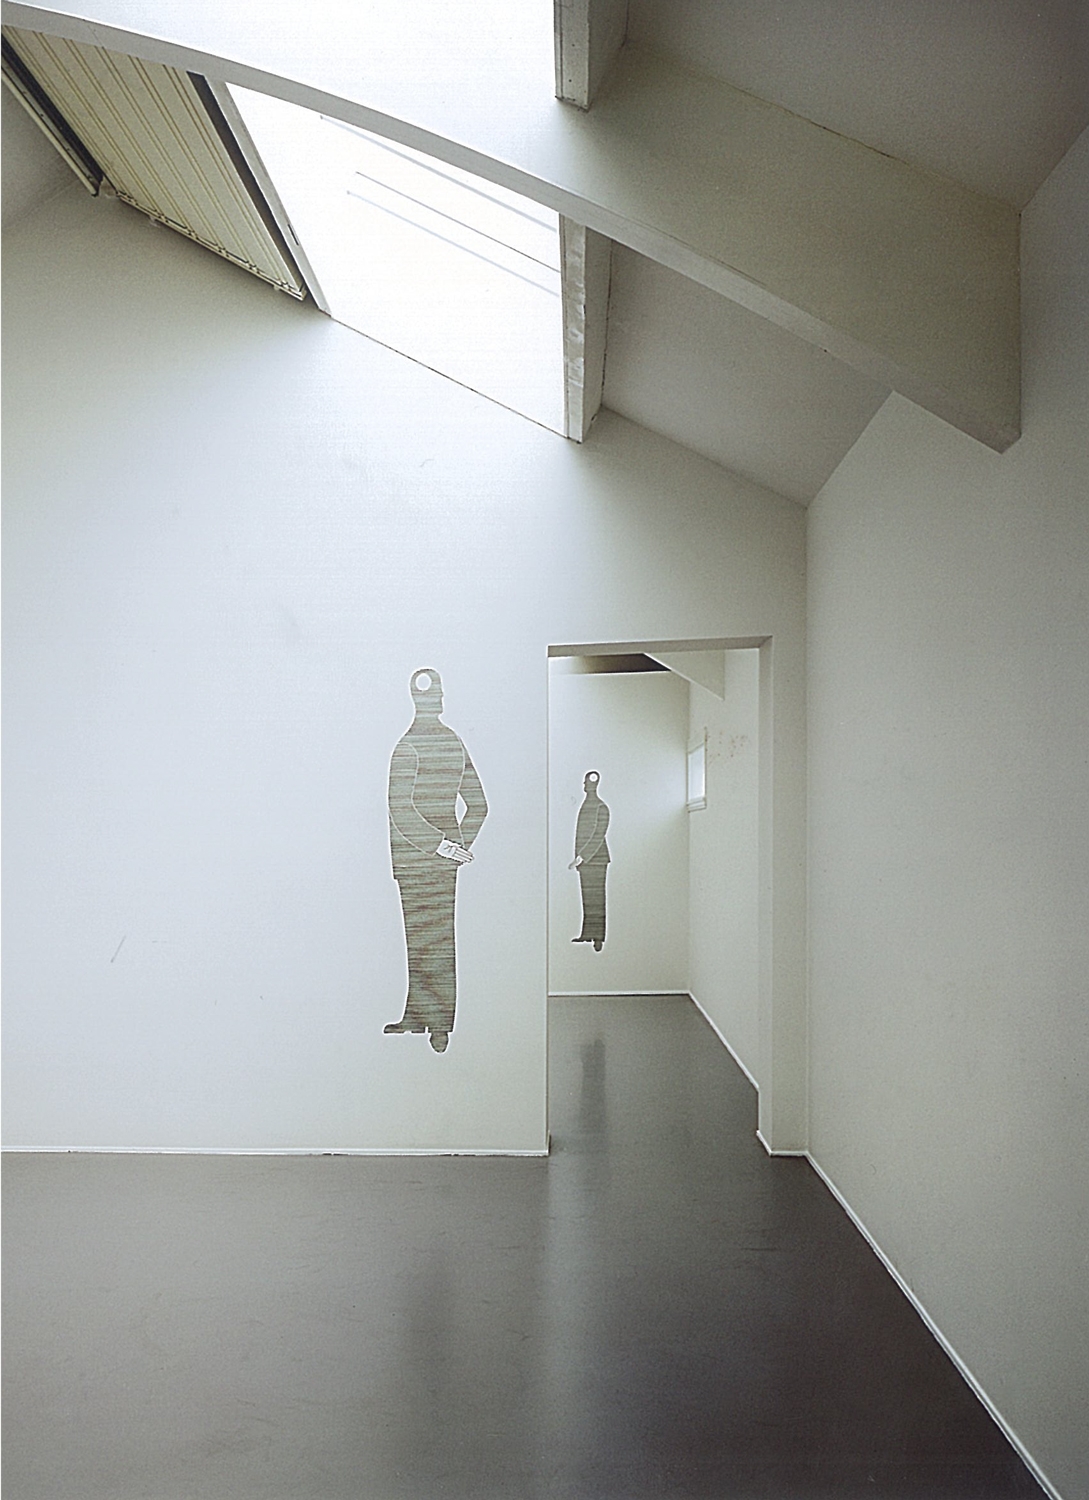 M.R. van der Graaff, 2006
Installatiefoto | S E C | M.R. van der Graaff